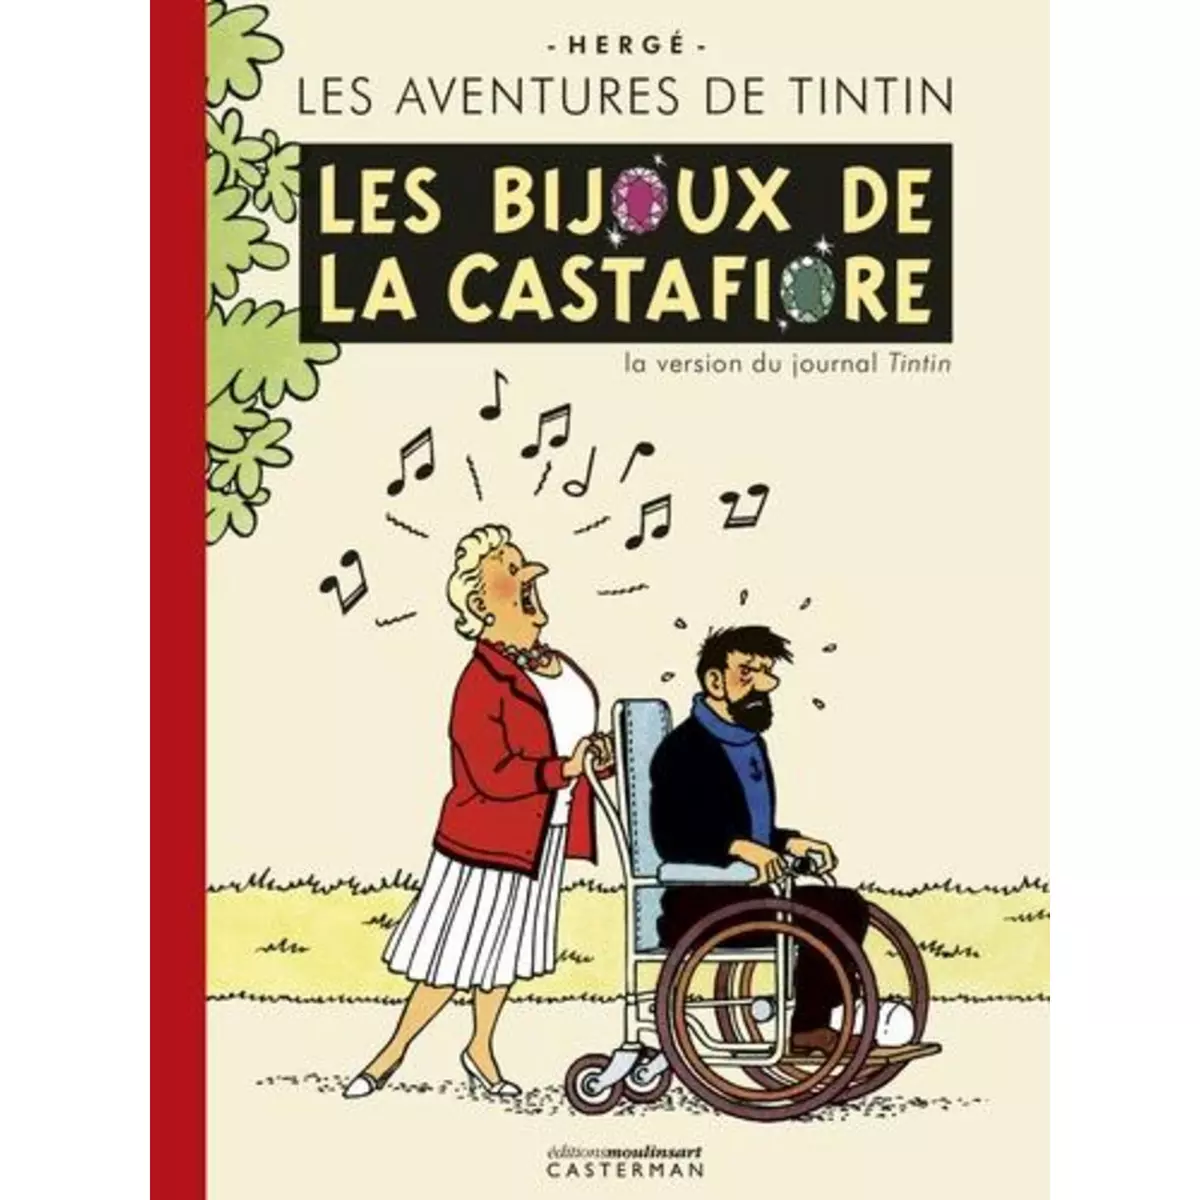  LES AVENTURES DE TINTIN TOME 21 : LES BIJOUX DE LA CASTAFIORE. LA VERSION DU JOURNAL TINTIN, Hergé